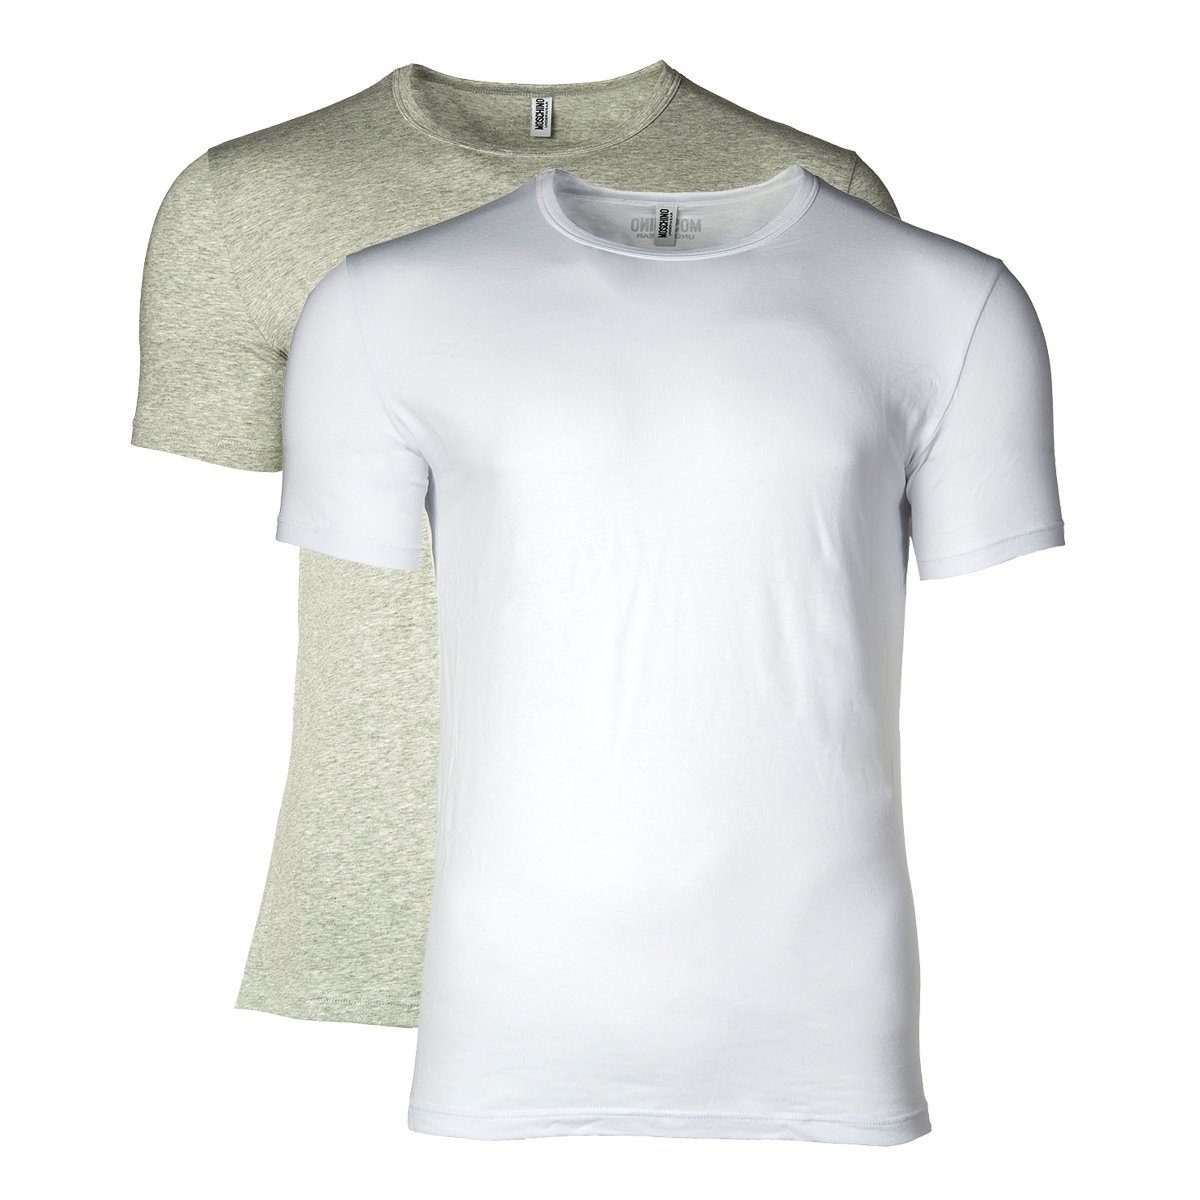 Moschino T-Shirt Herren T-Shirt 2er Pack - Crew Neck, Rundhals